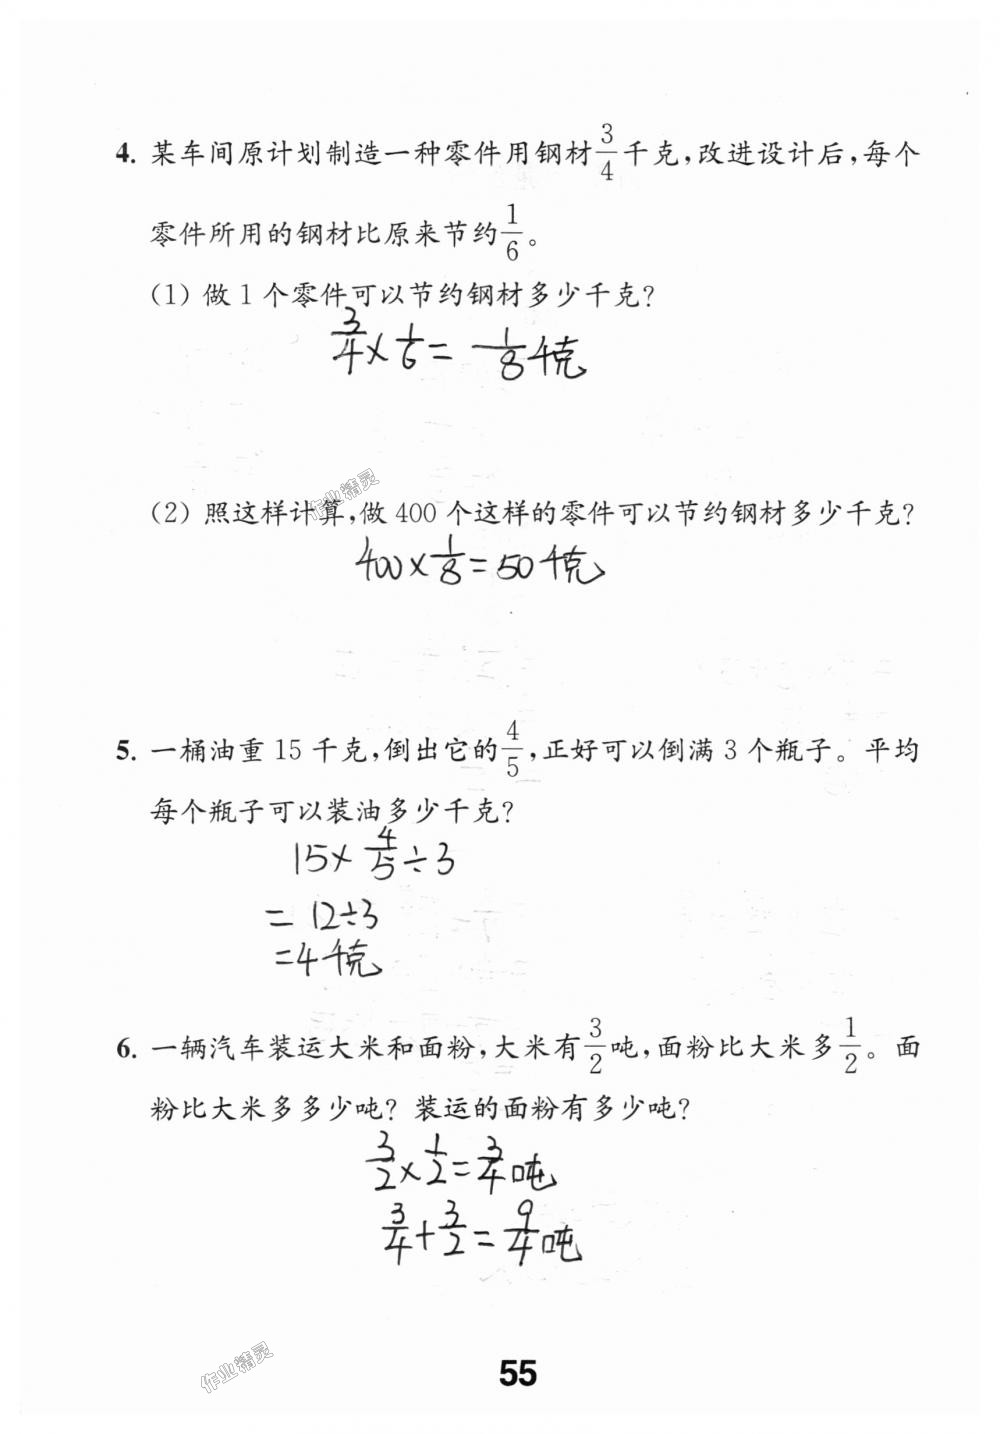 2018年数学补充习题六年级上册苏教版江苏凤凰教育出版社 第55页